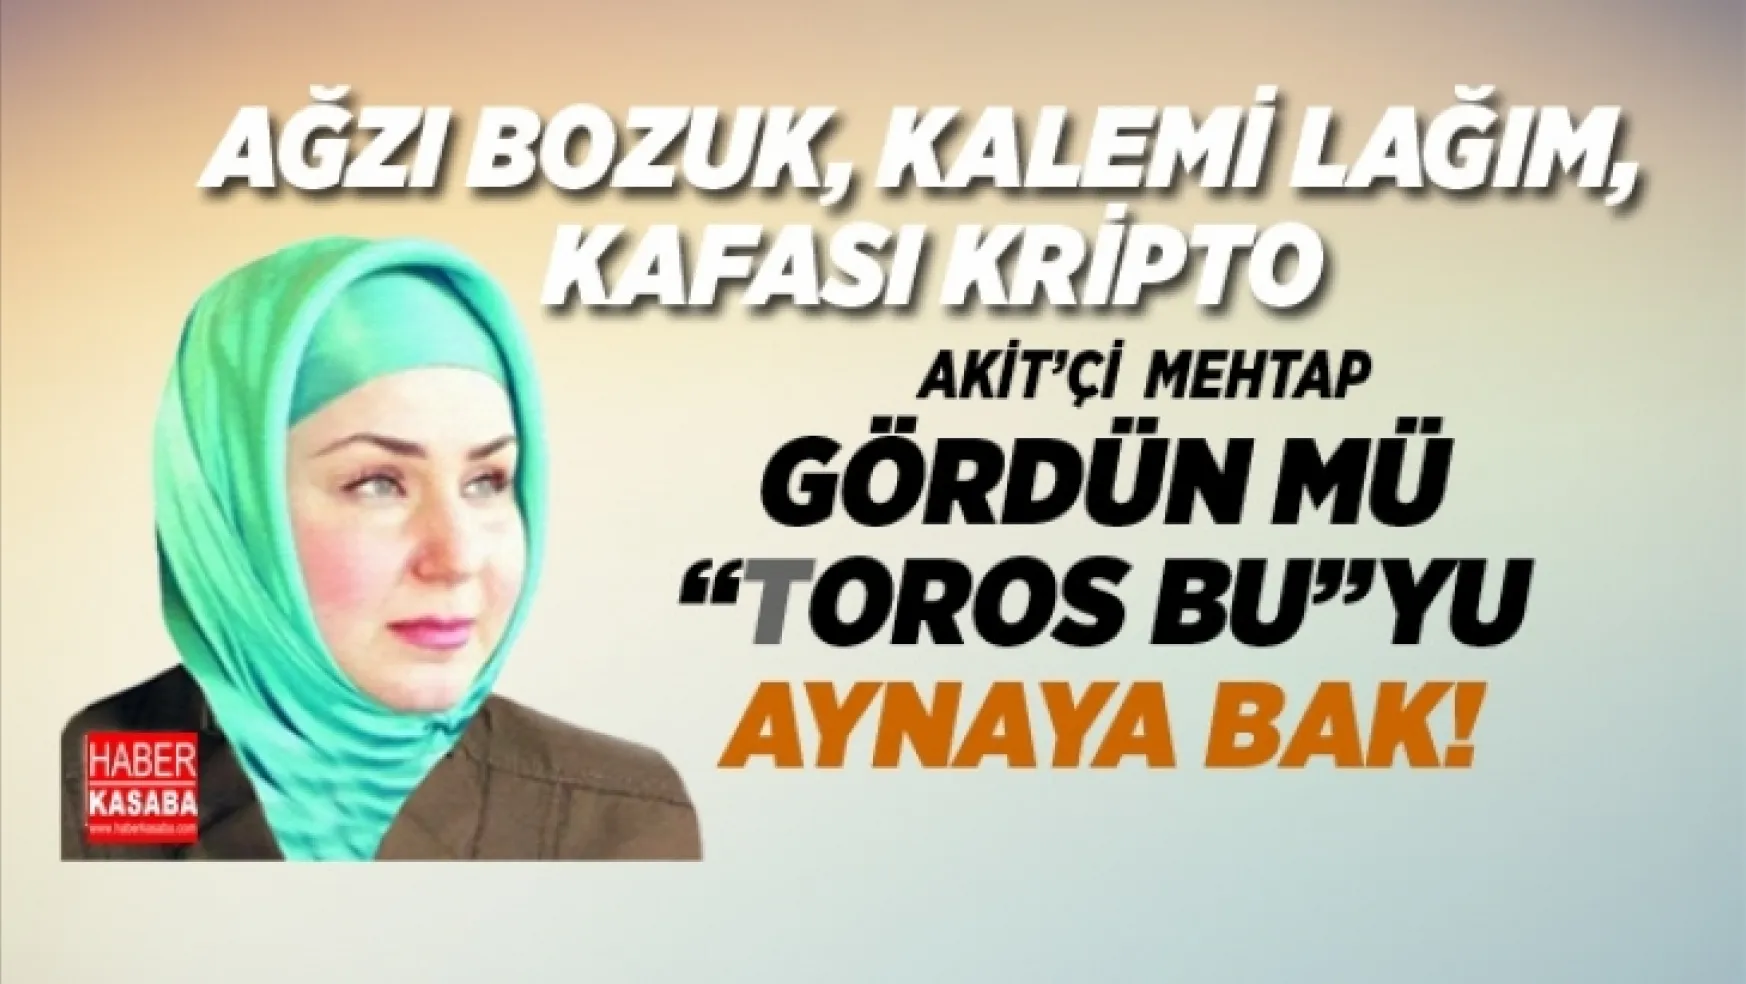 AK Parti'li Şamil Tayyar Akit'ci Mehtap Yılmaz'ın FETÖ maillerini yayınladı